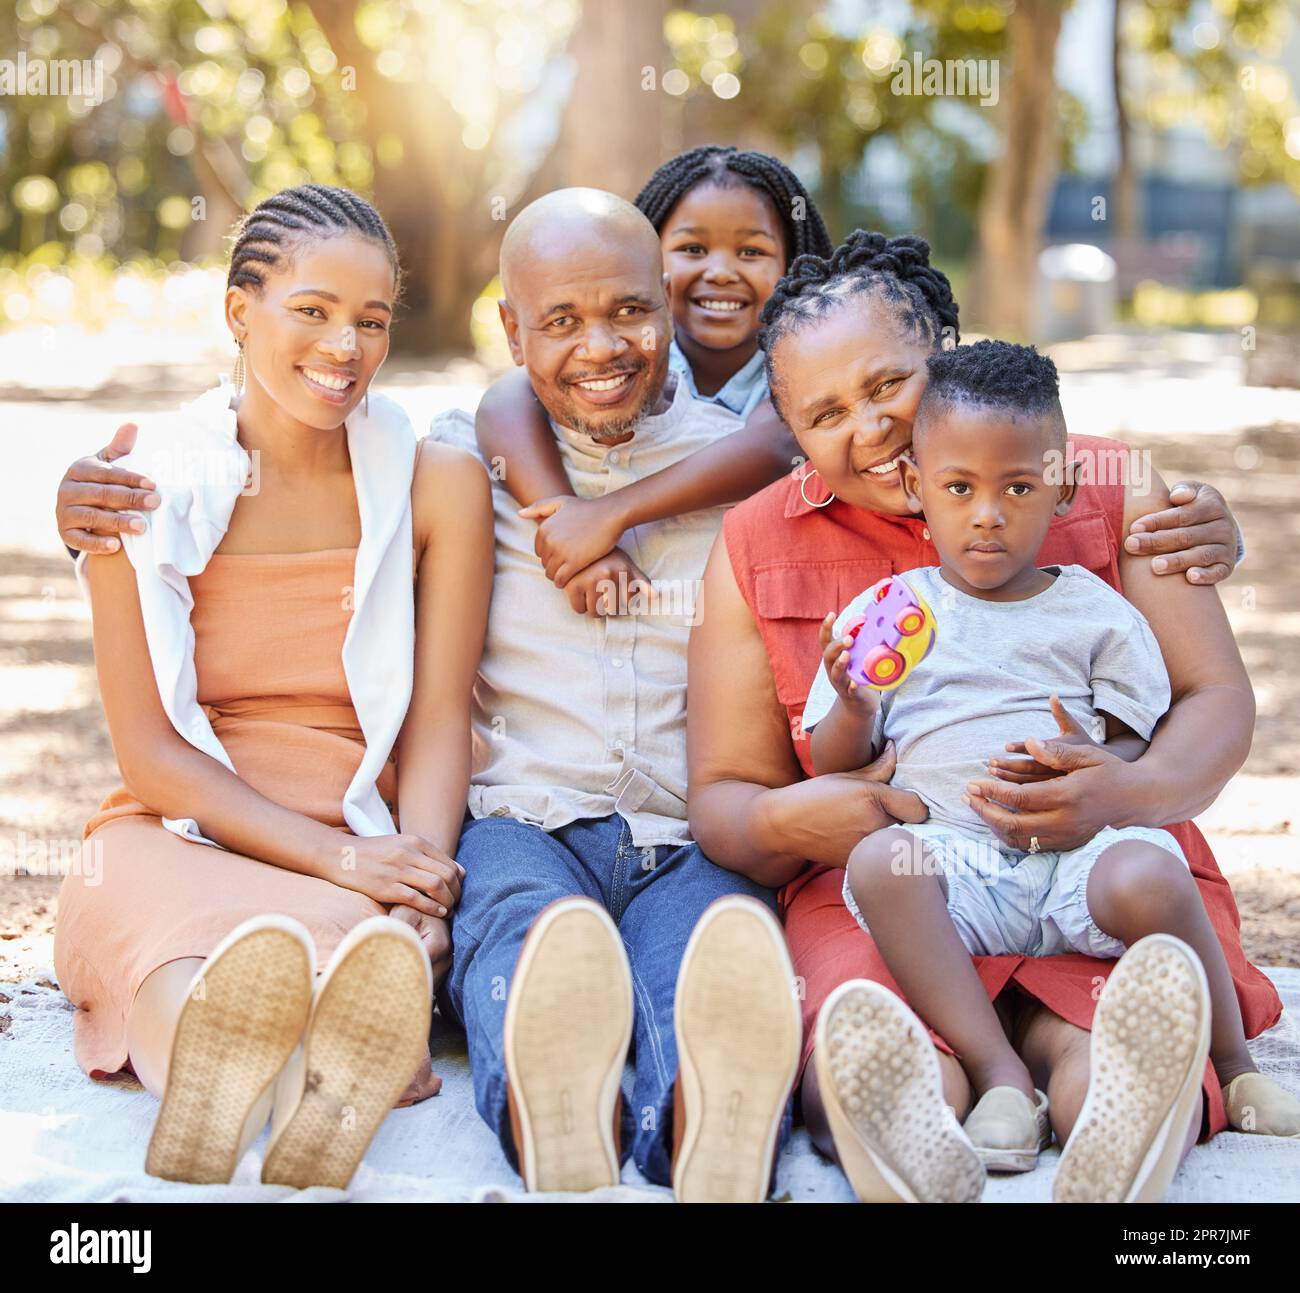 Portrait glückliche afroamerikanische Familie mit fünf Personen, die im Sommer eine schöne Zeit zusammen im Park verbringen. Großeltern, Mutter und Kinder, die sich draußen anfreunden. Ein Ausflug mit den Kindern Stockfoto